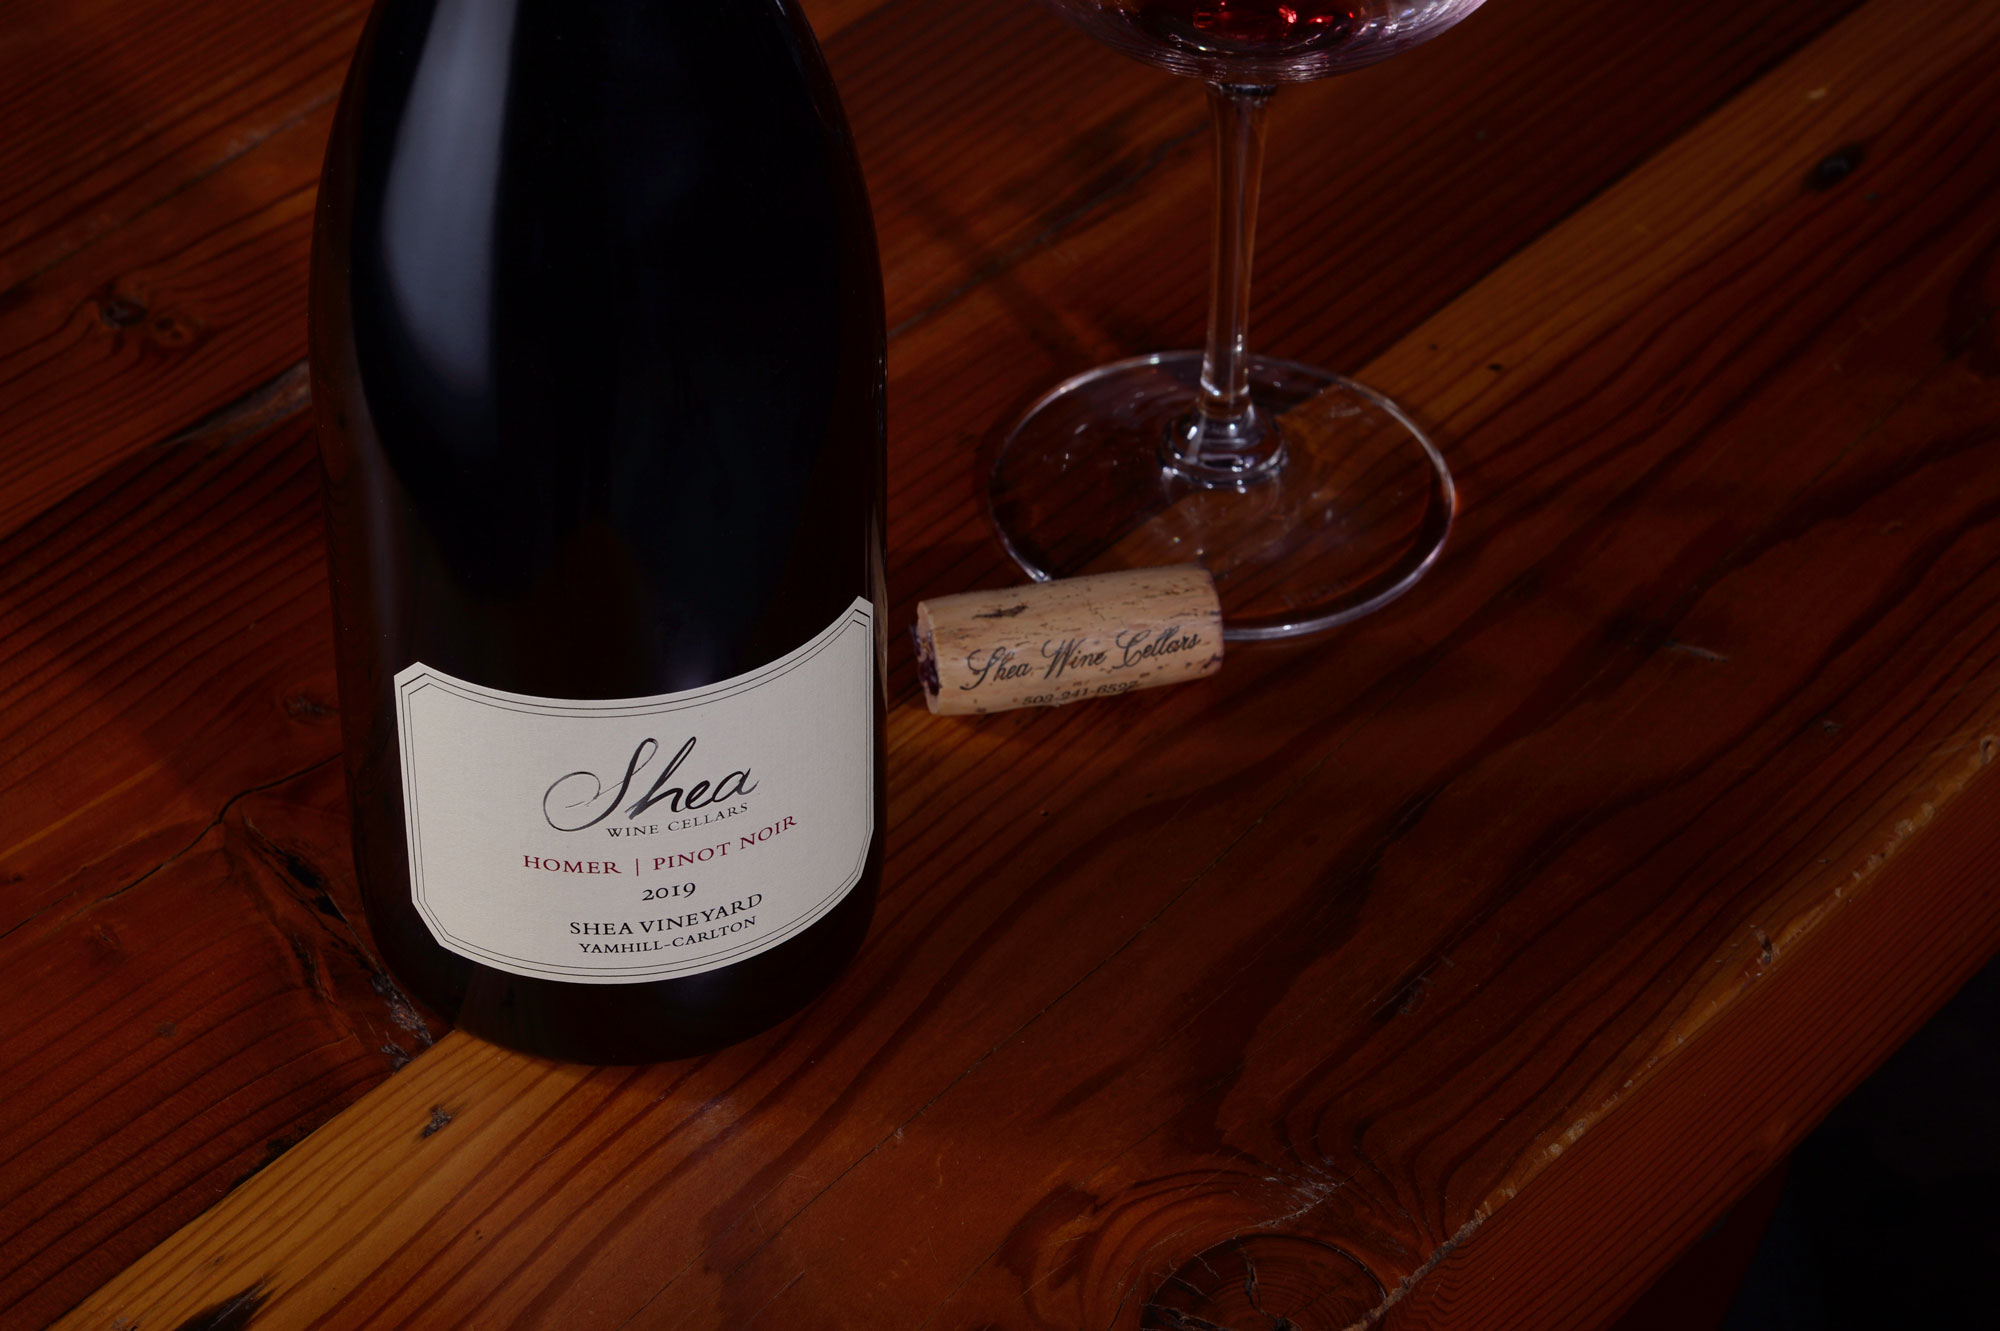 Bottle of Shea Wine Cellars 2019 Homer Pinot Noir, a cork, and a glass